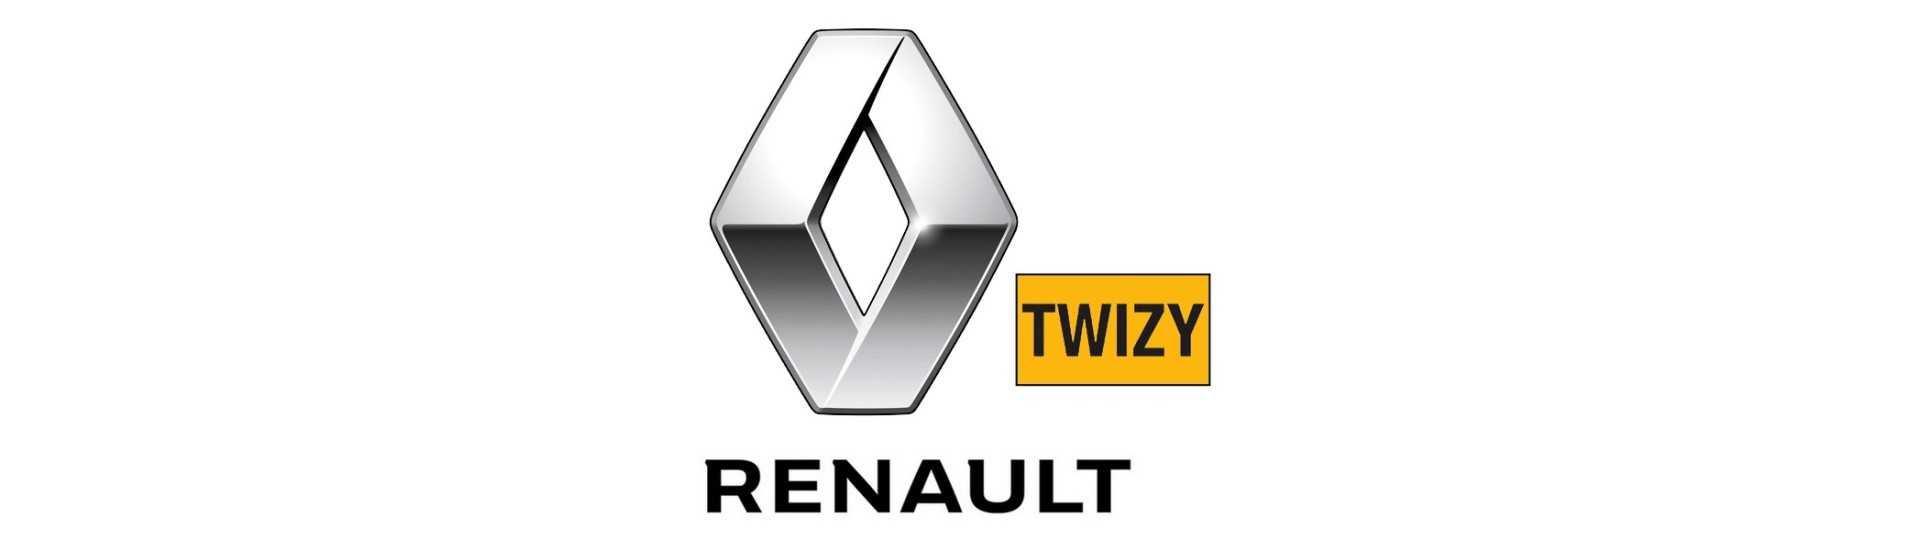 Katadioptre till bästa pris för bil utan tillstånd Renault Twizy